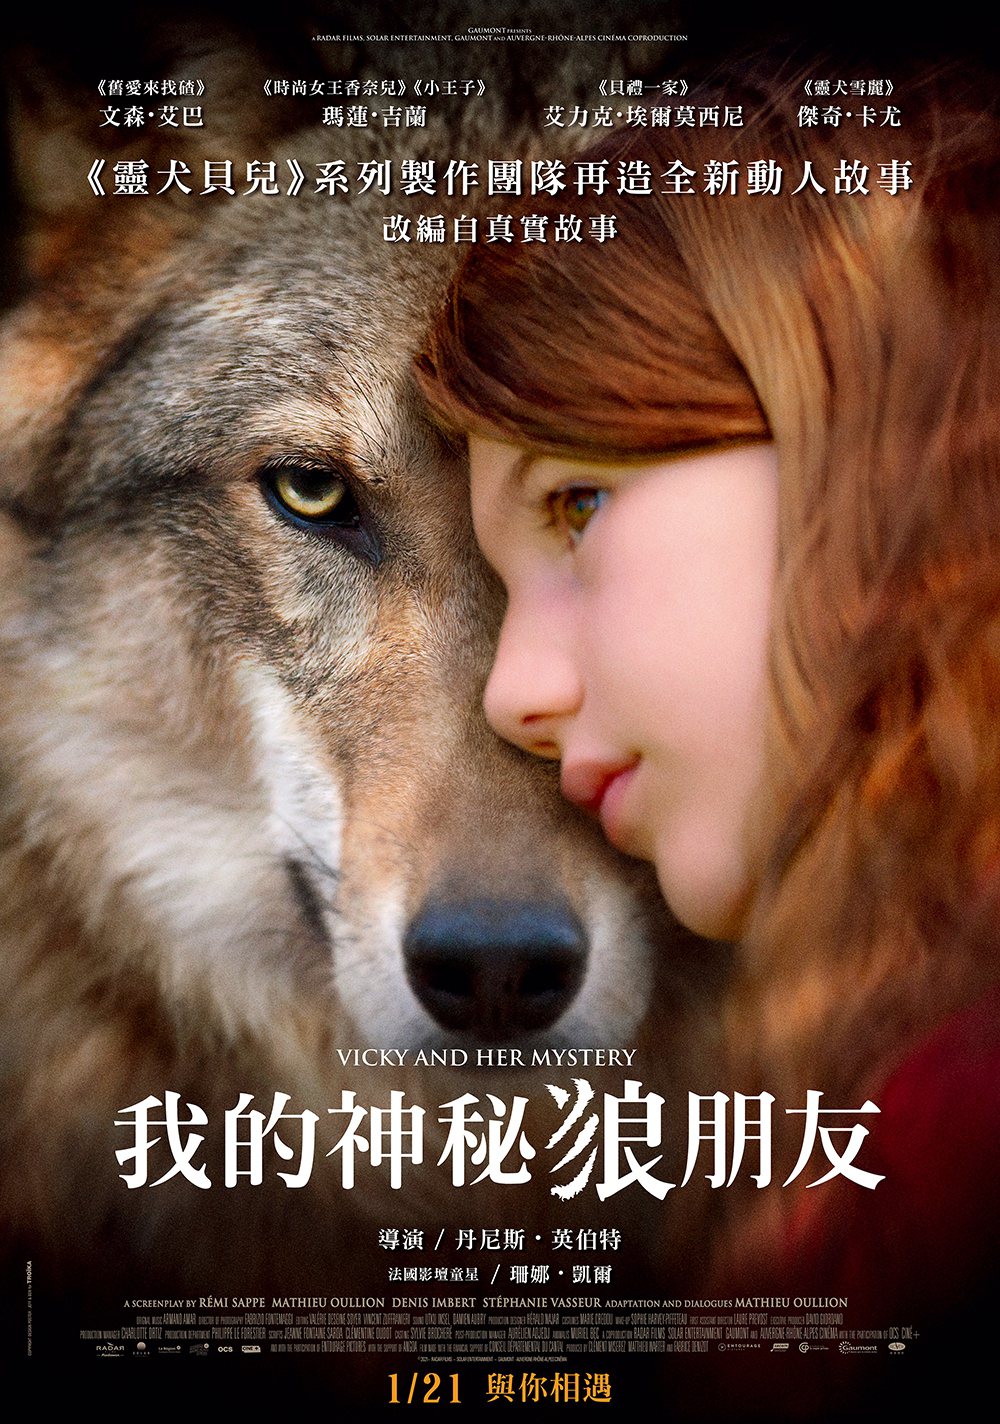 《我的神秘狼朋友》中文版海報。捷傑提供